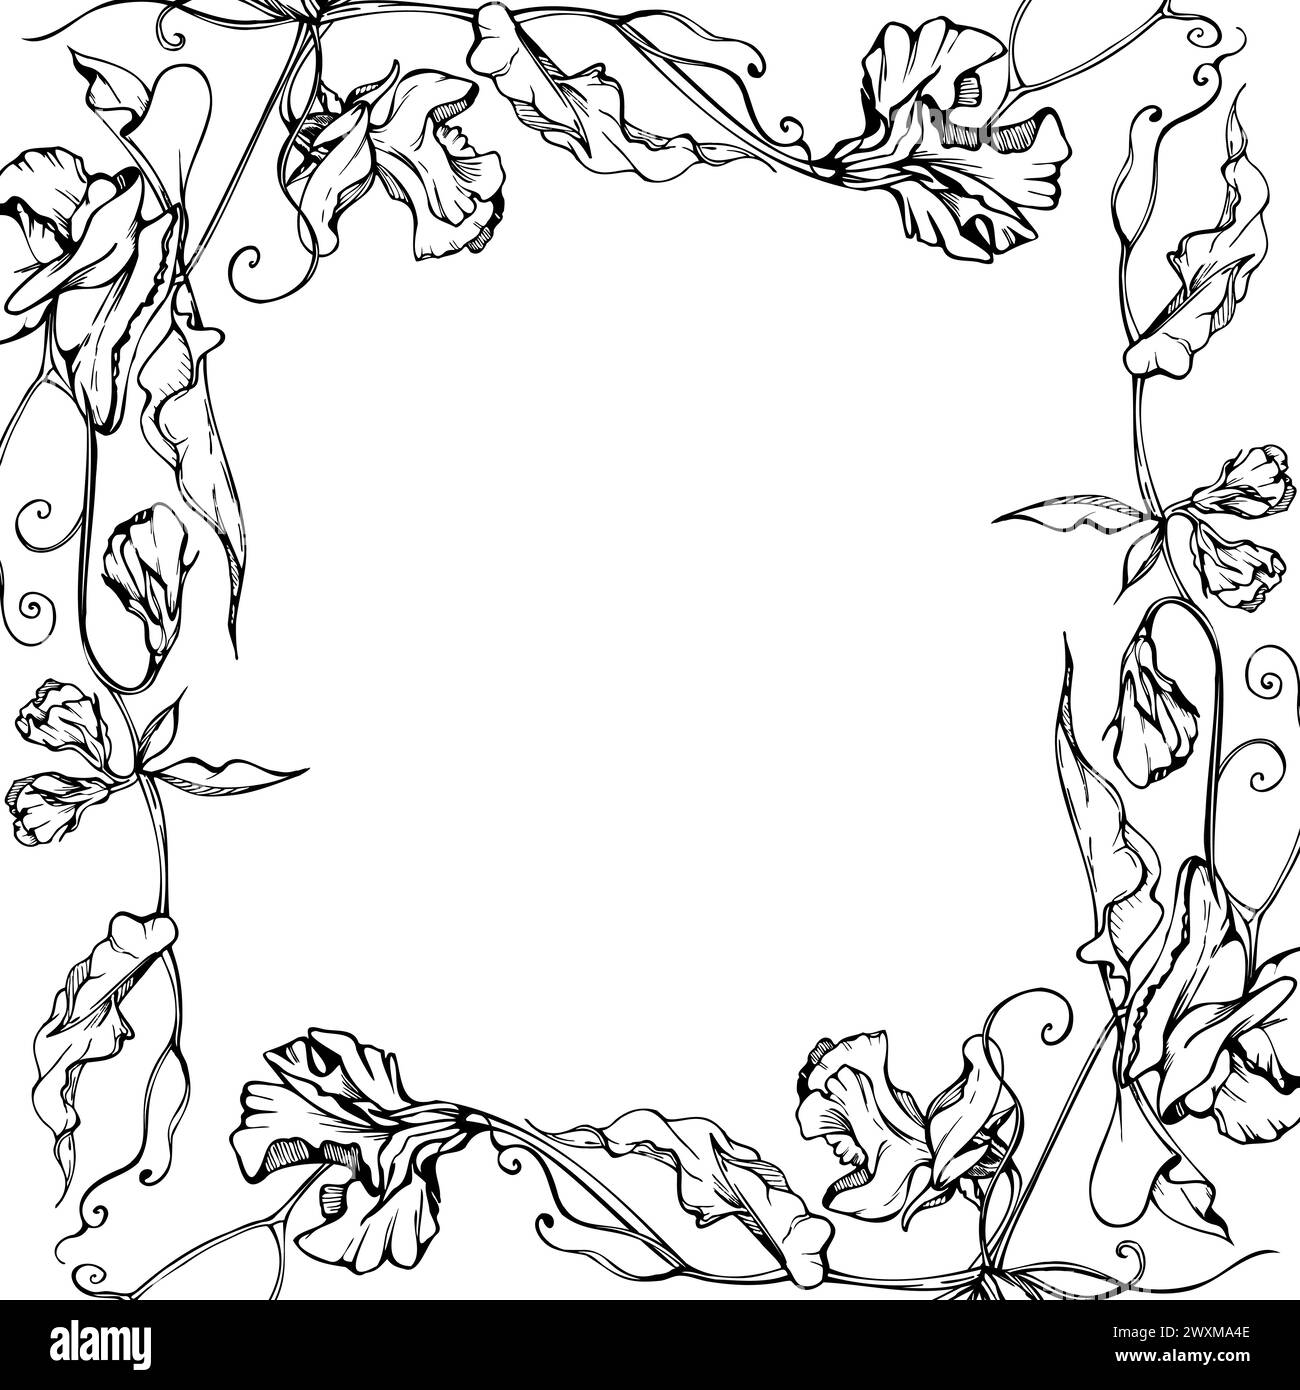 Hand gezeichnete Vektor-grafische Tinte Illustration botanische Blumen Blätter. Süße, immerwährende Erbsen, Wicken-Bindweed-Leguminosen-Ranken. Begrenzungsrahmen isoliert Stock Vektor